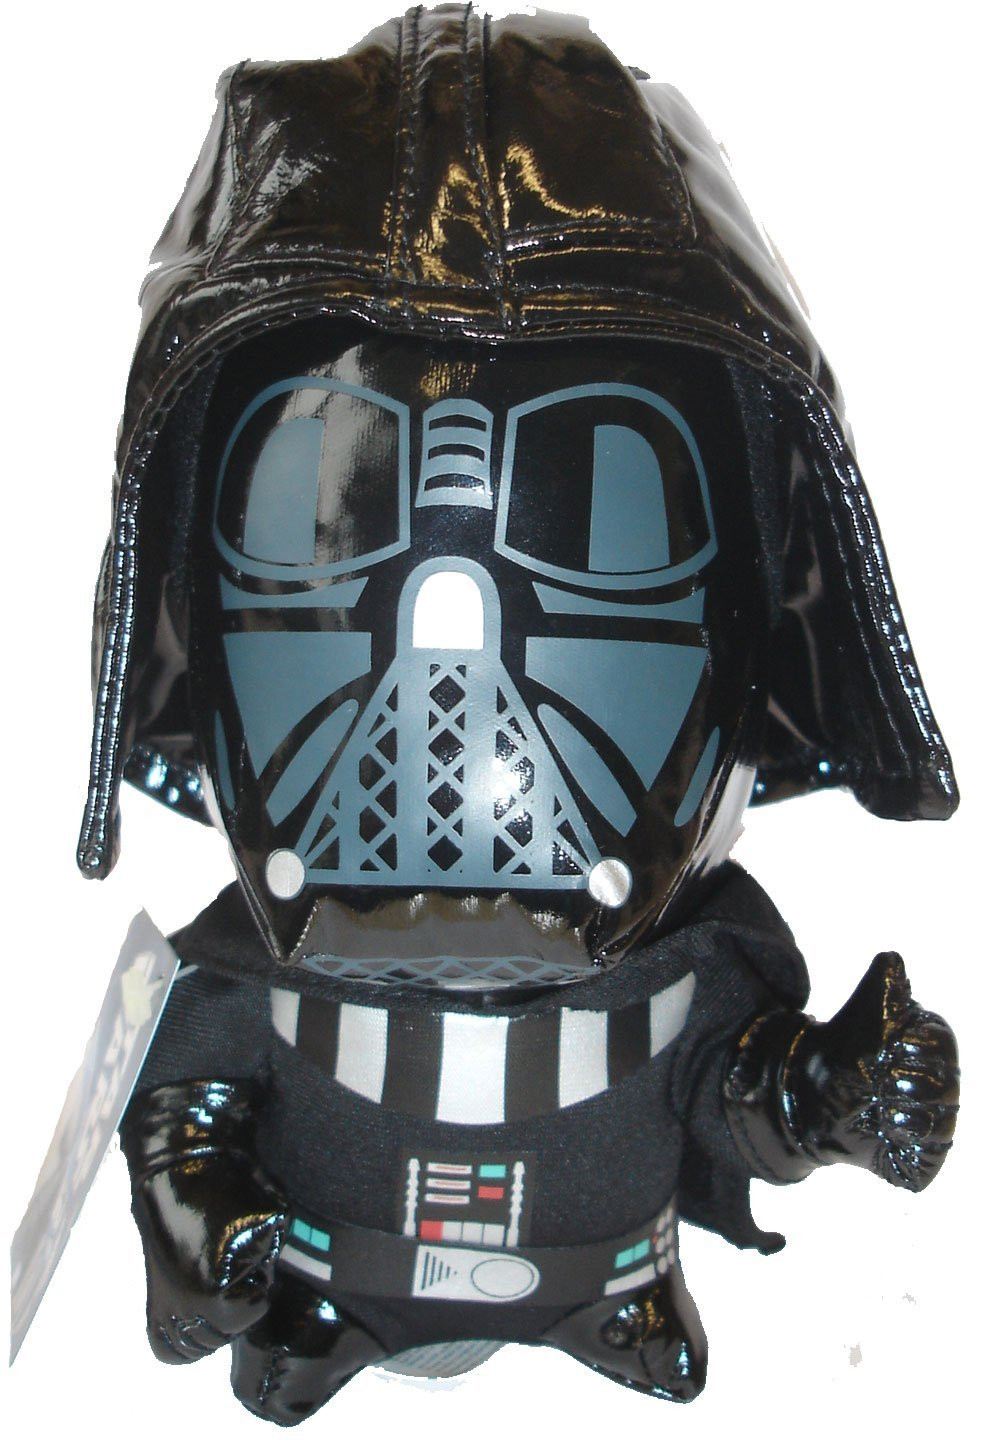 Peluche Star Wars Darth Vader  17 cm peluches Guerre Stellari *00616